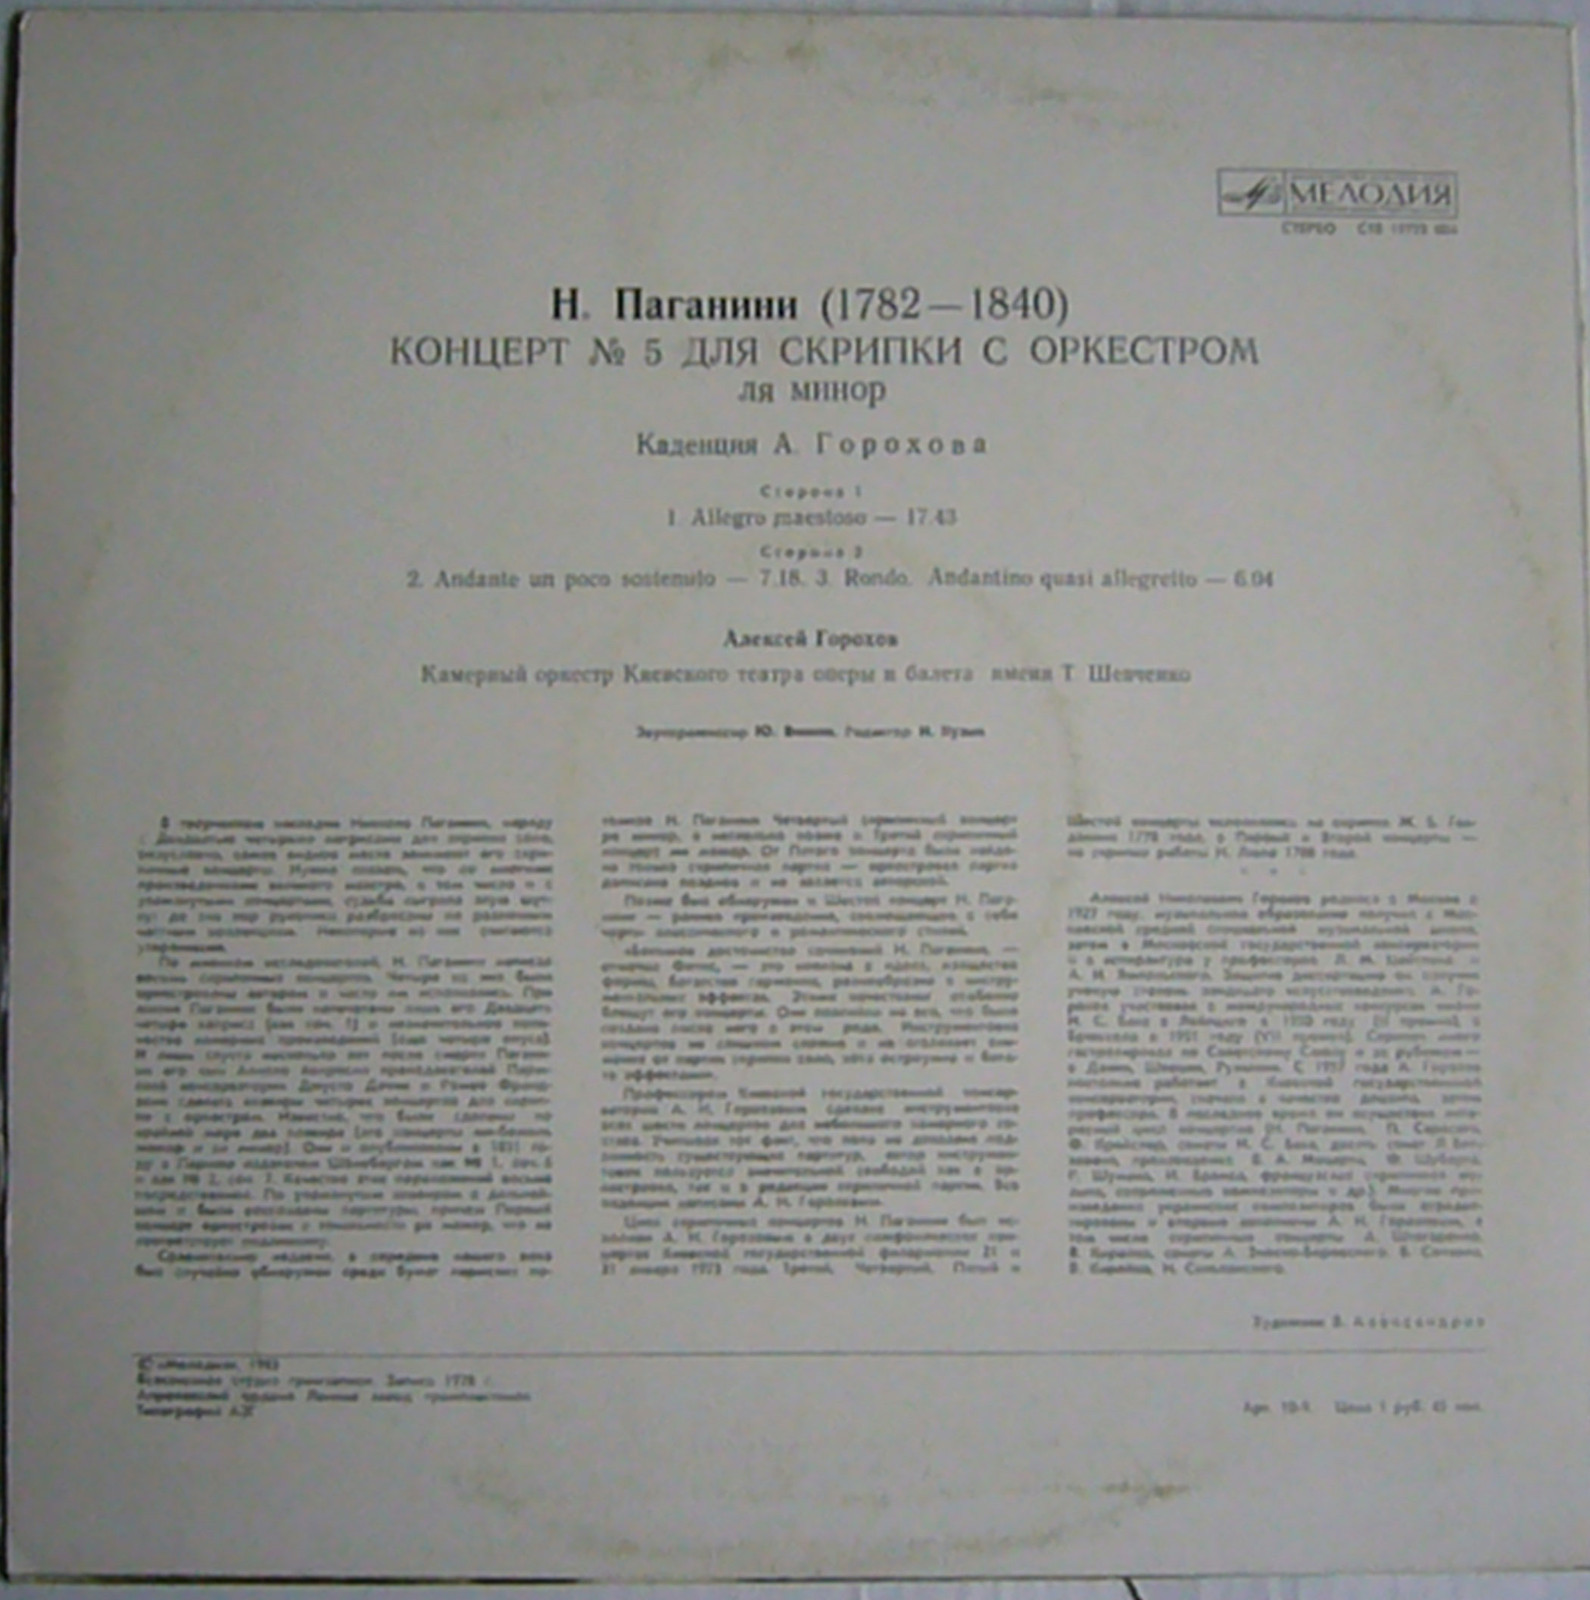 Н. ПАГАНИНИ (1782–1840). Концерт № 5 для скрипки с оркестром ля минор (А. Горохов)